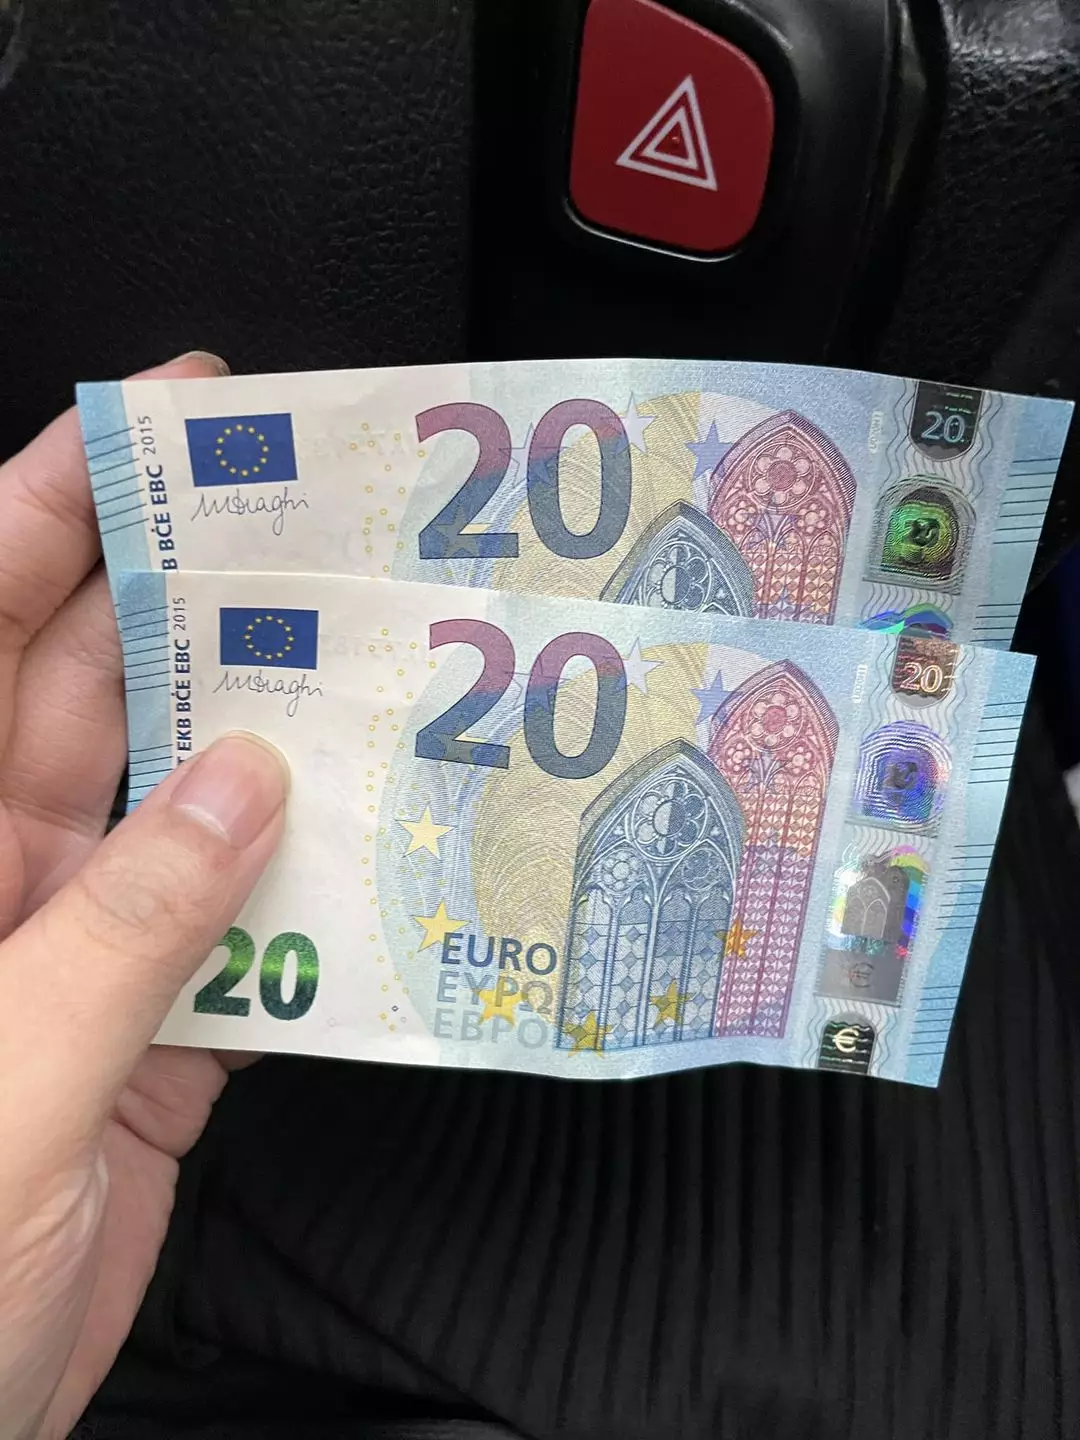 司機收到的兩張20歐羅，與港幣20元的確非常相似。（圖片來源：的士司機資訊網 Taxi）